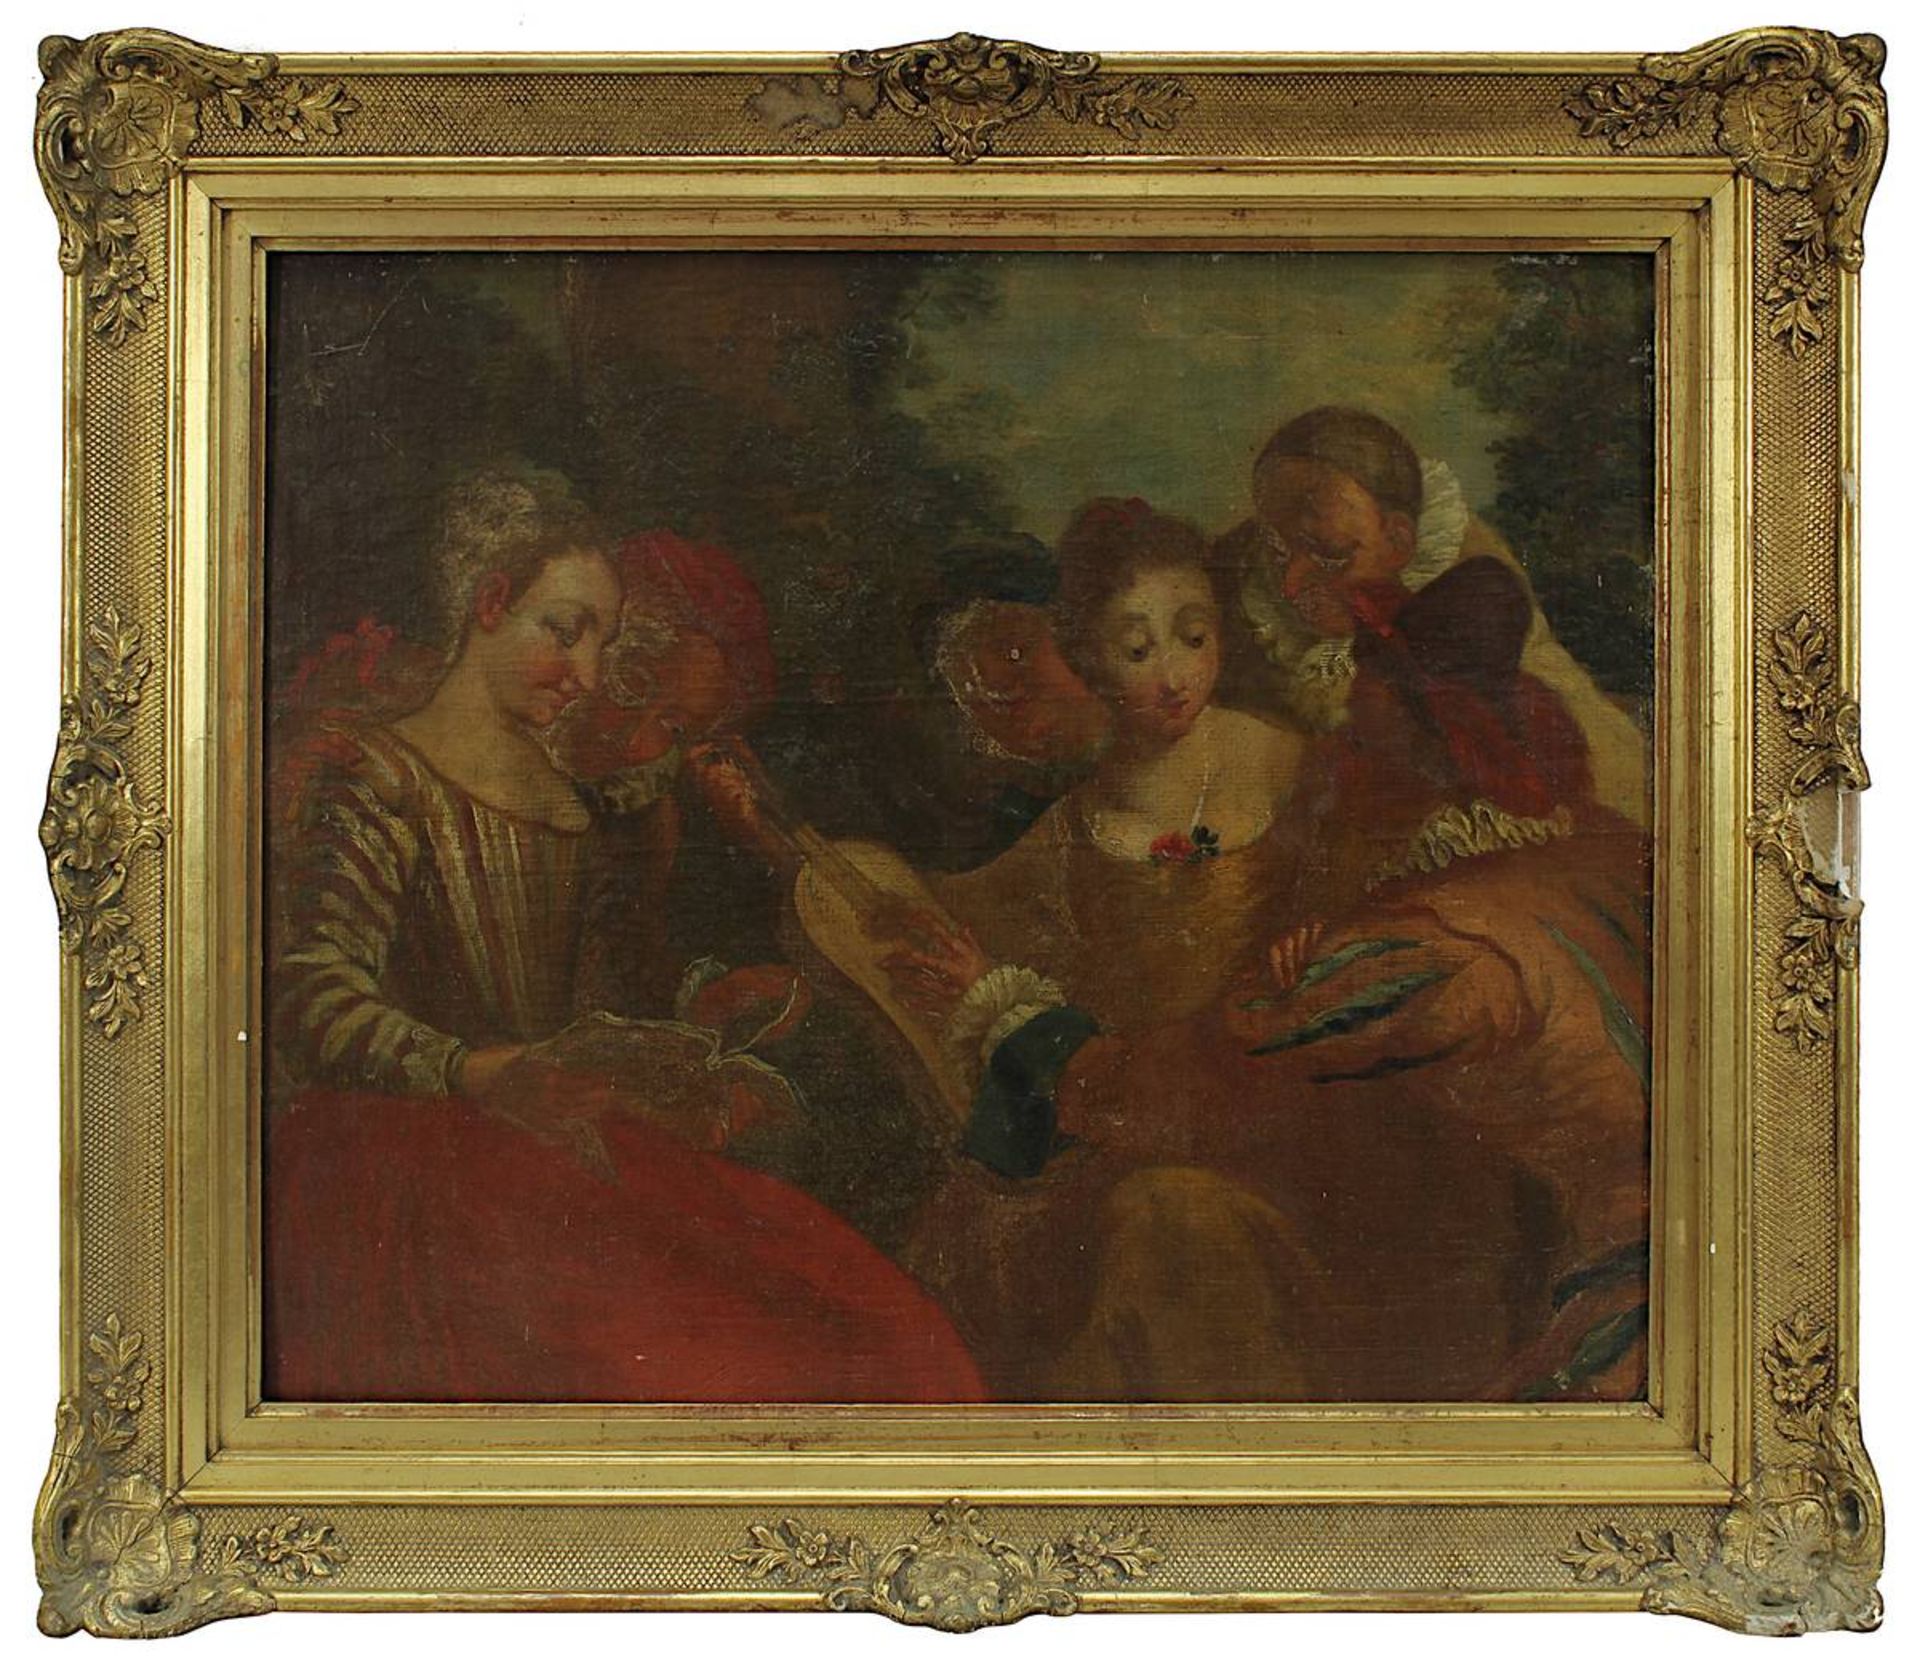 Watteau, Jean-Antoine-Nachfolger, Vergnügte Gesellschaft, wohl 18. Jh., Öl auf Leinwand, auf